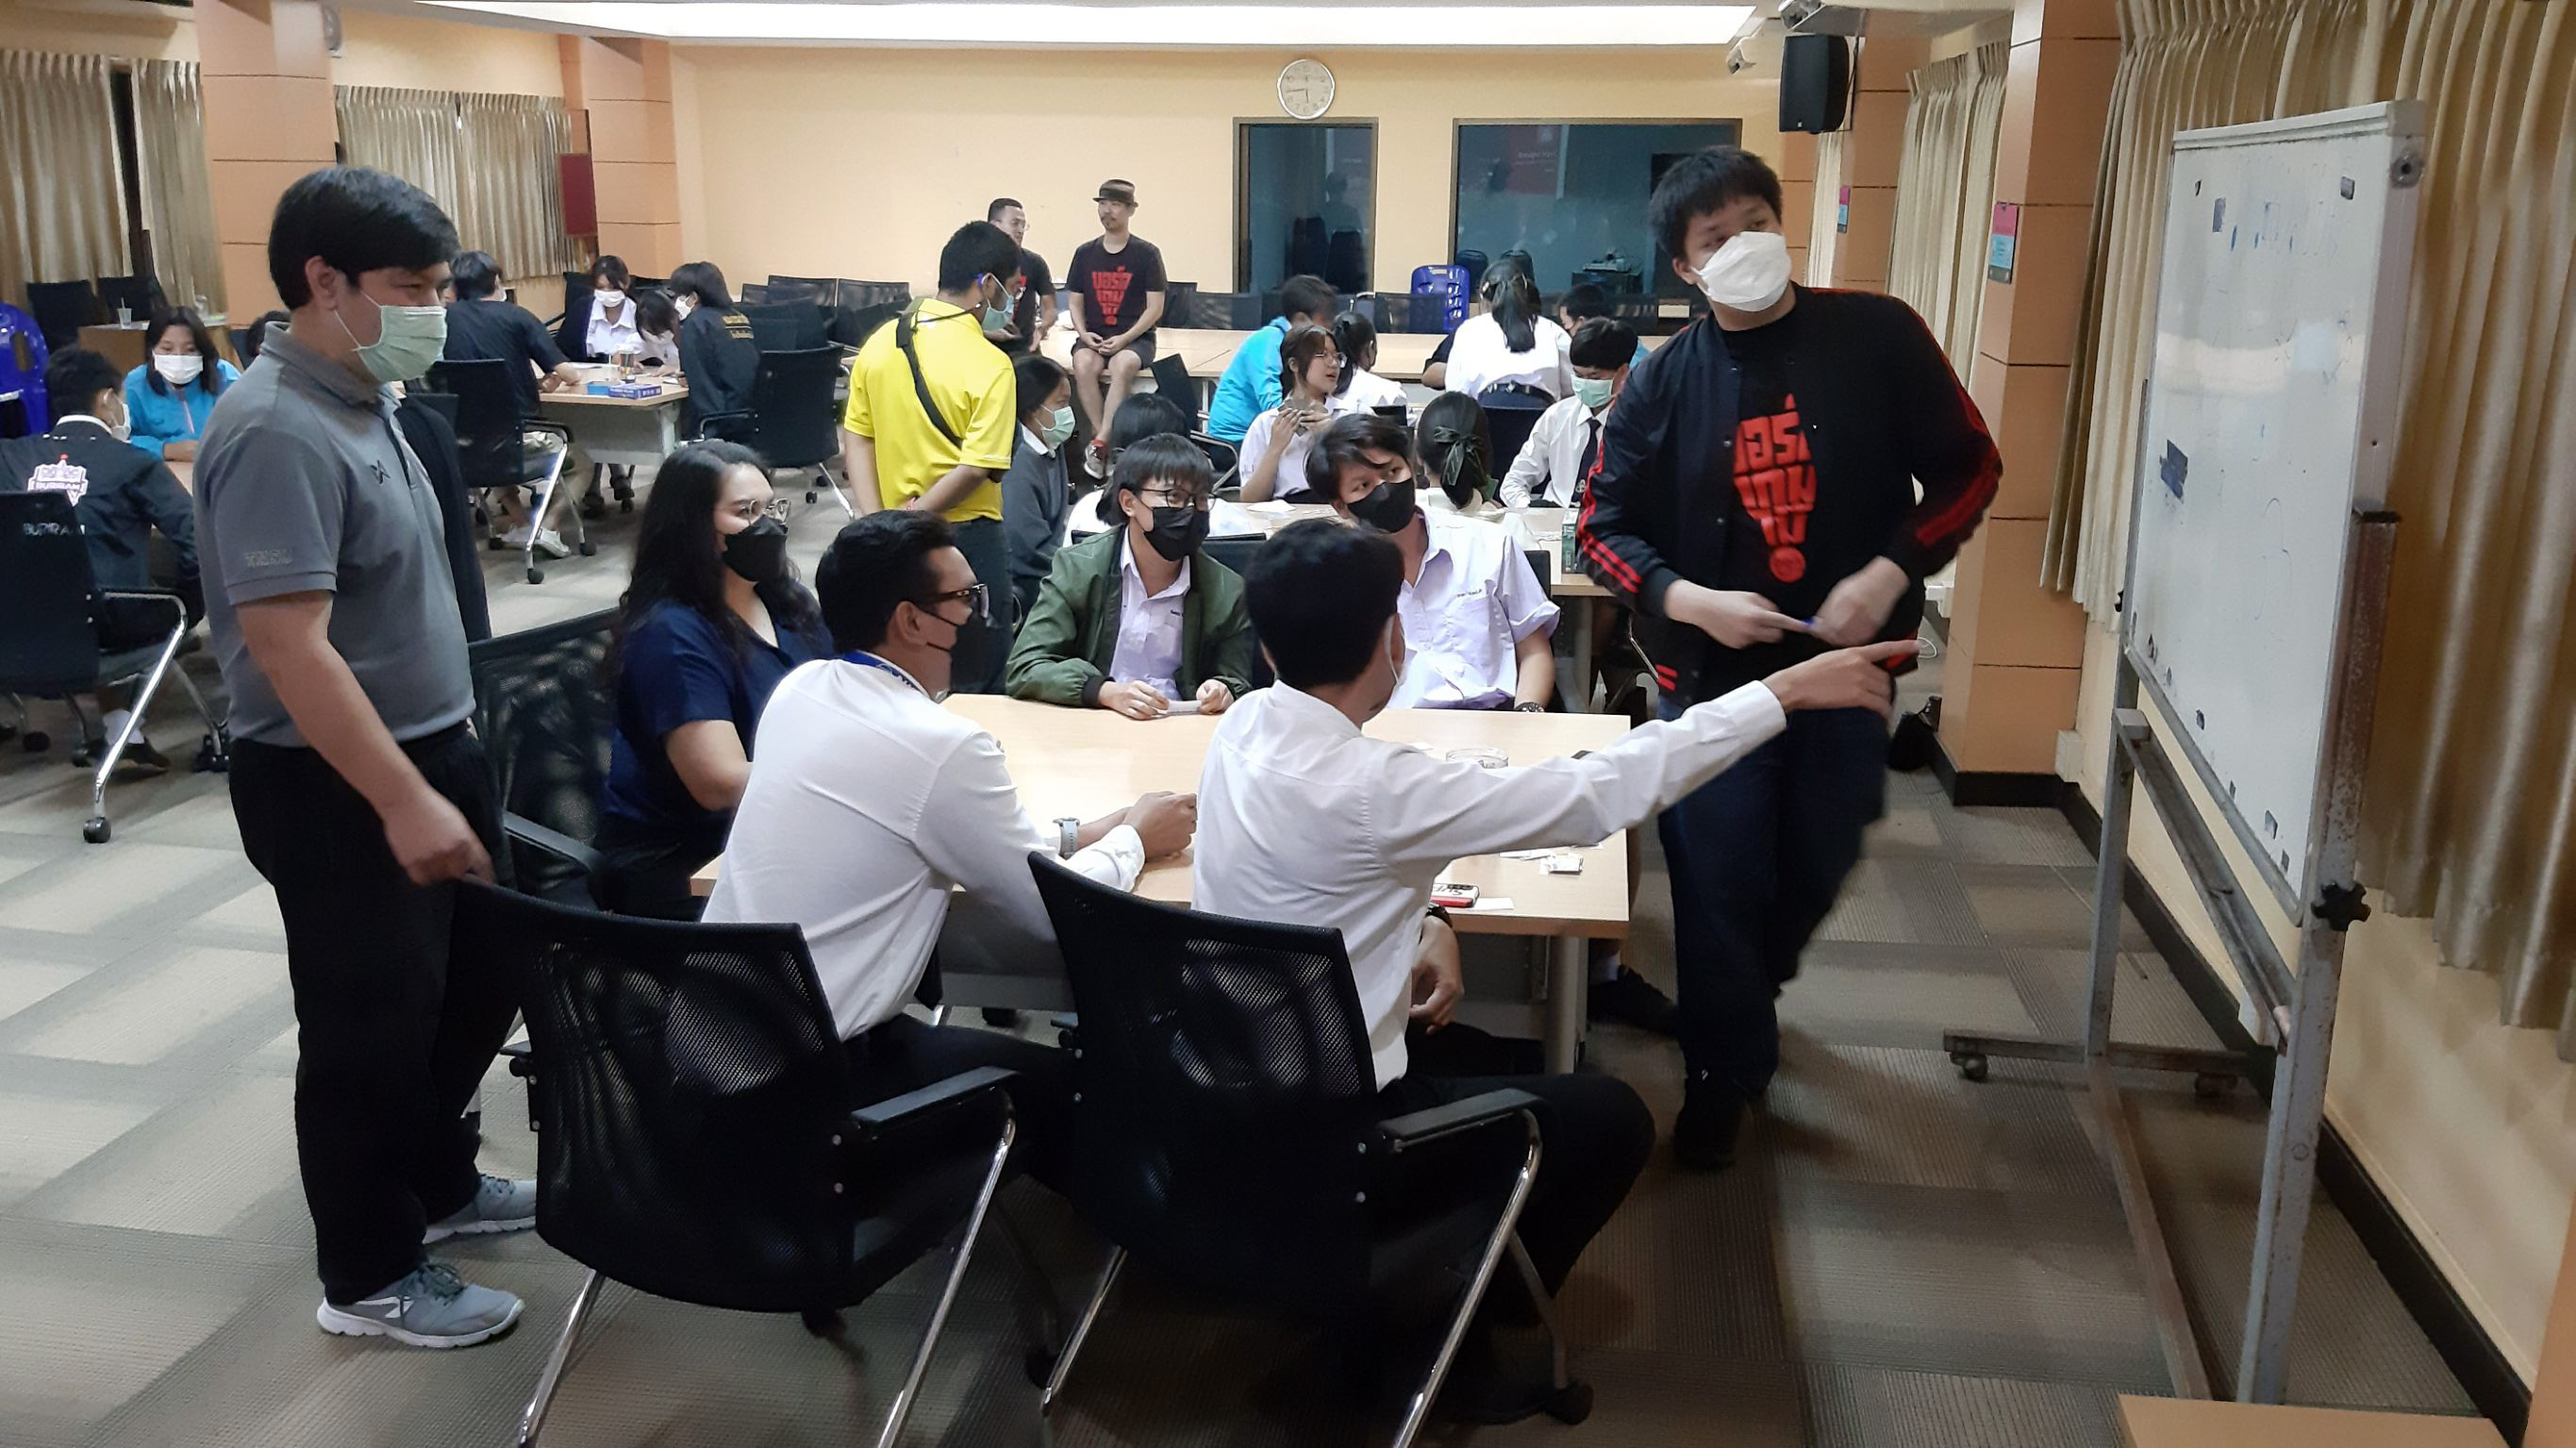 ชมรมบอร์ดเกมเพื่อการศึกษา จัดกิจกรรม Boardgame Rally Learning วันที่ 25 มกราคม 2565 ณ ห้องประชุมนวัตกรรมฯ คณะศึกษาศาสตร์